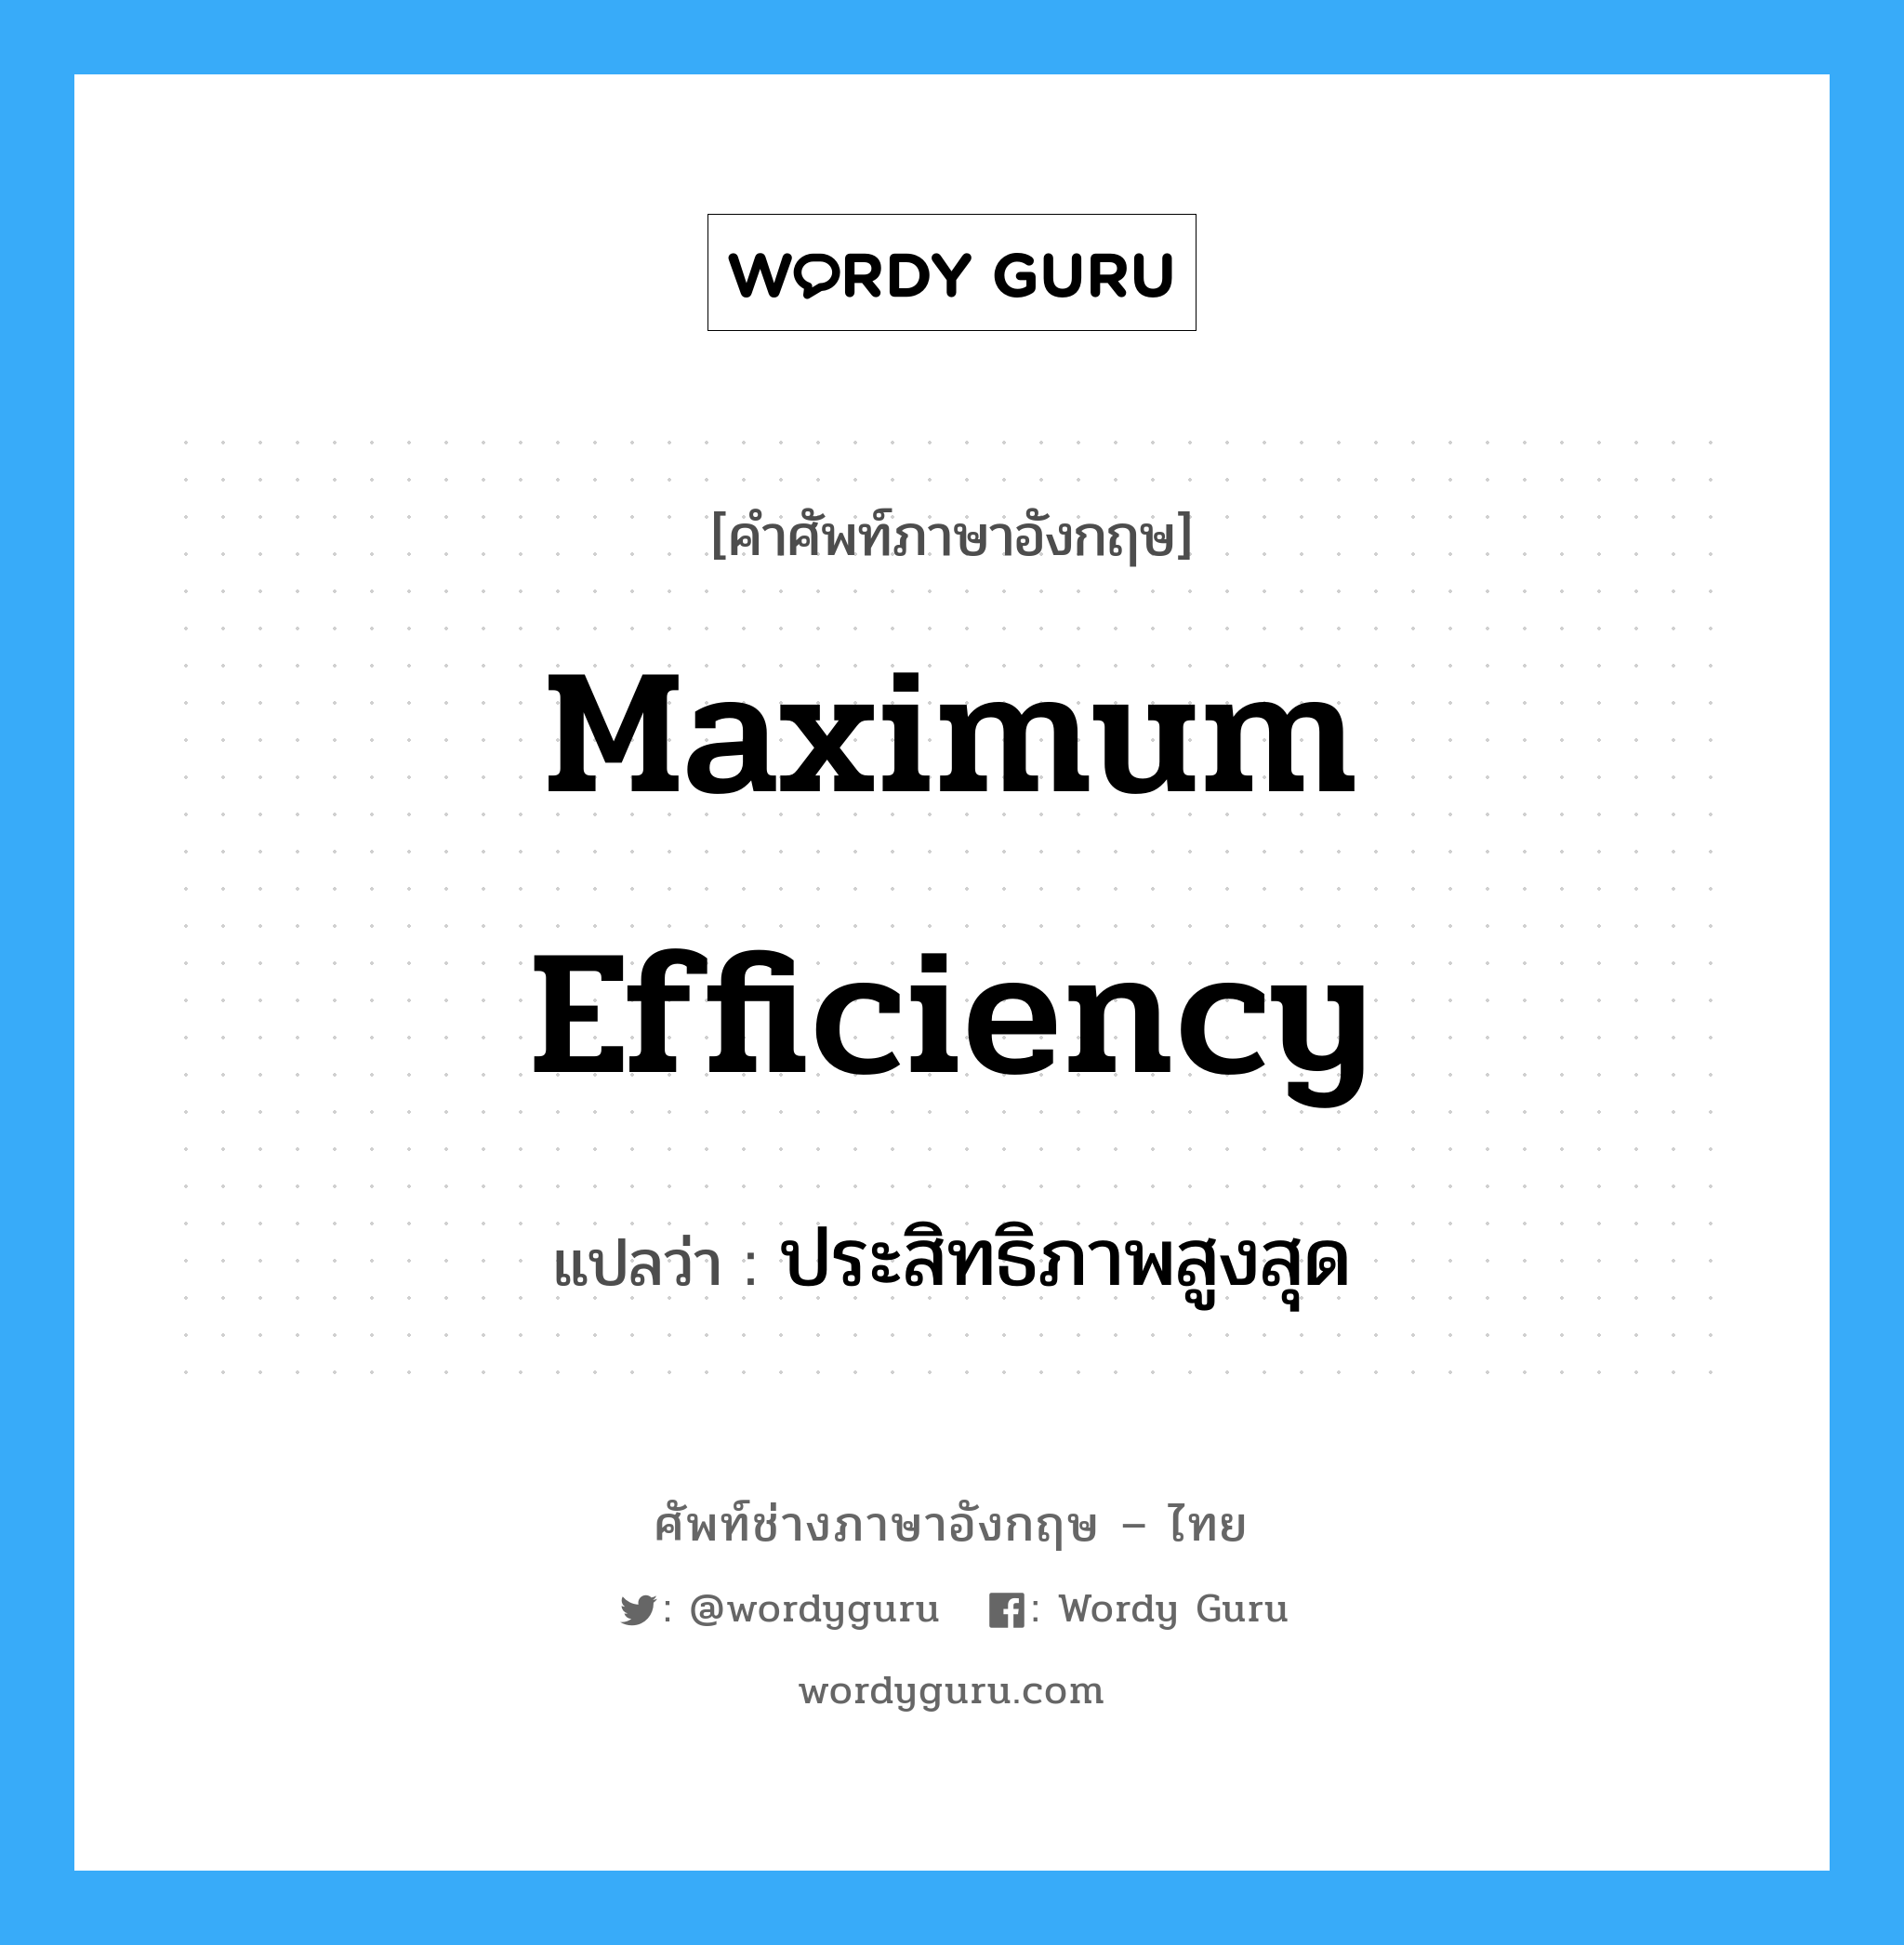 maximum efficiency แปลว่า?, คำศัพท์ช่างภาษาอังกฤษ - ไทย maximum efficiency คำศัพท์ภาษาอังกฤษ maximum efficiency แปลว่า ประสิทธิภาพสูงสุด